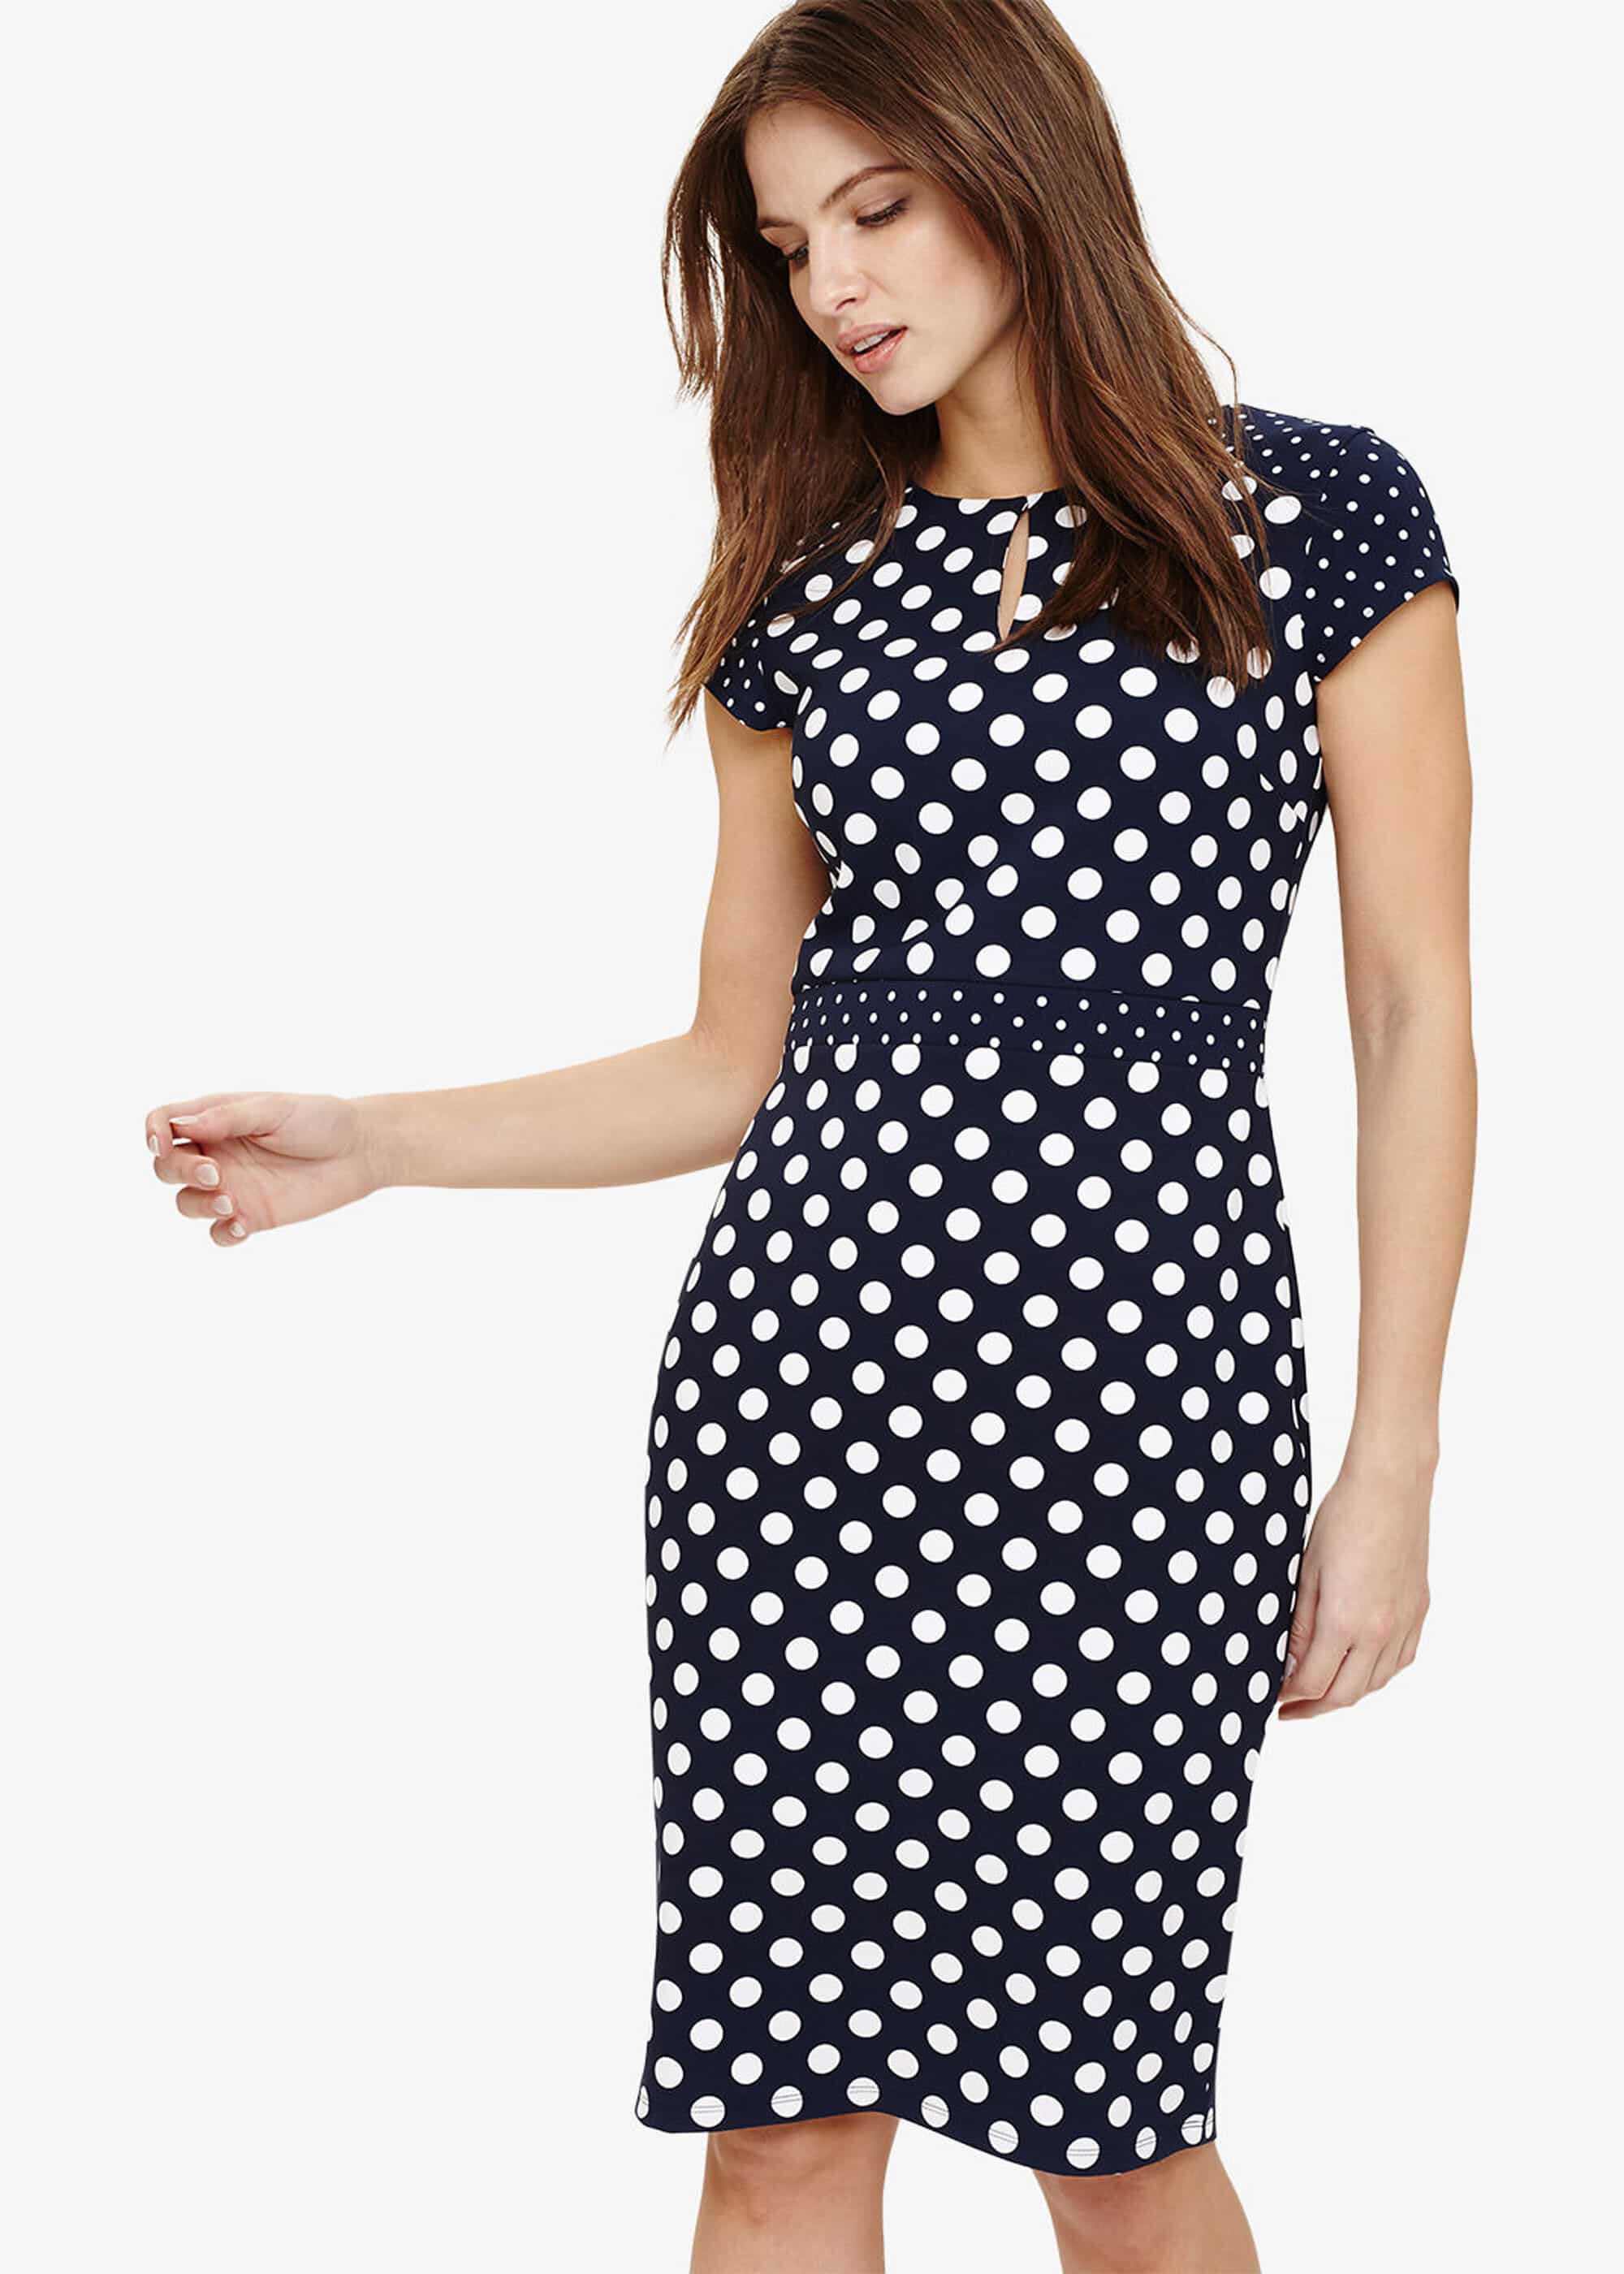 phase eight navy polka dot dress